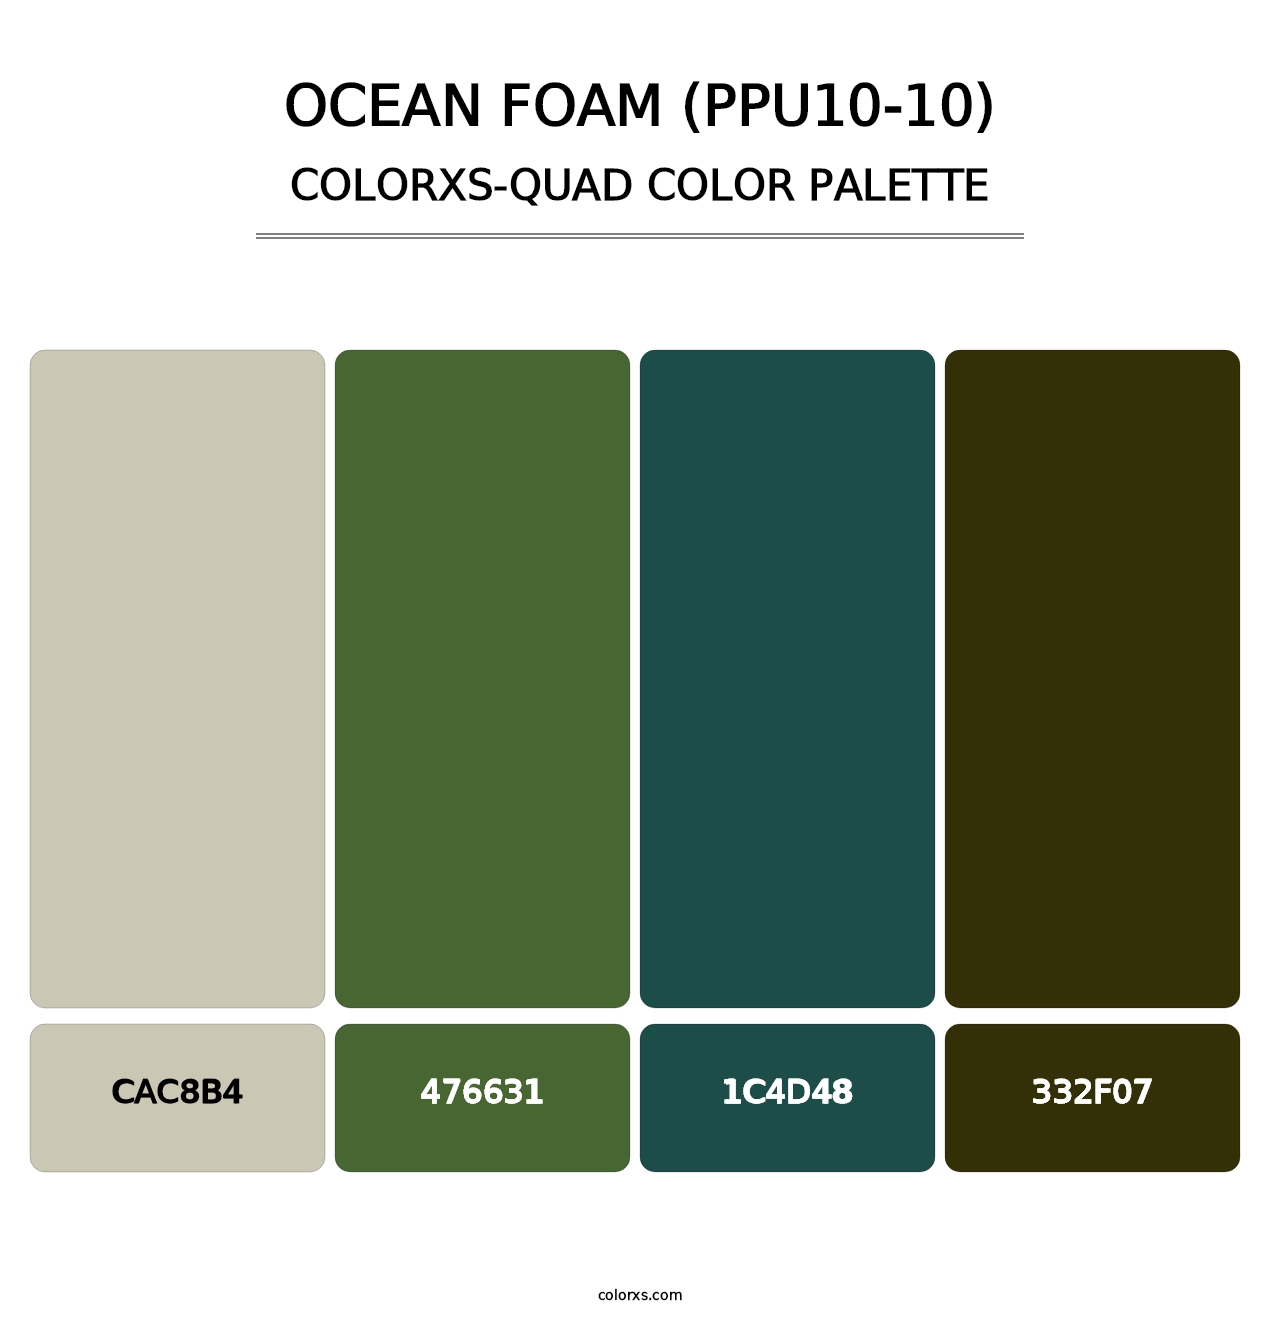 Ocean Foam (PPU10-10) - Colorxs Quad Palette